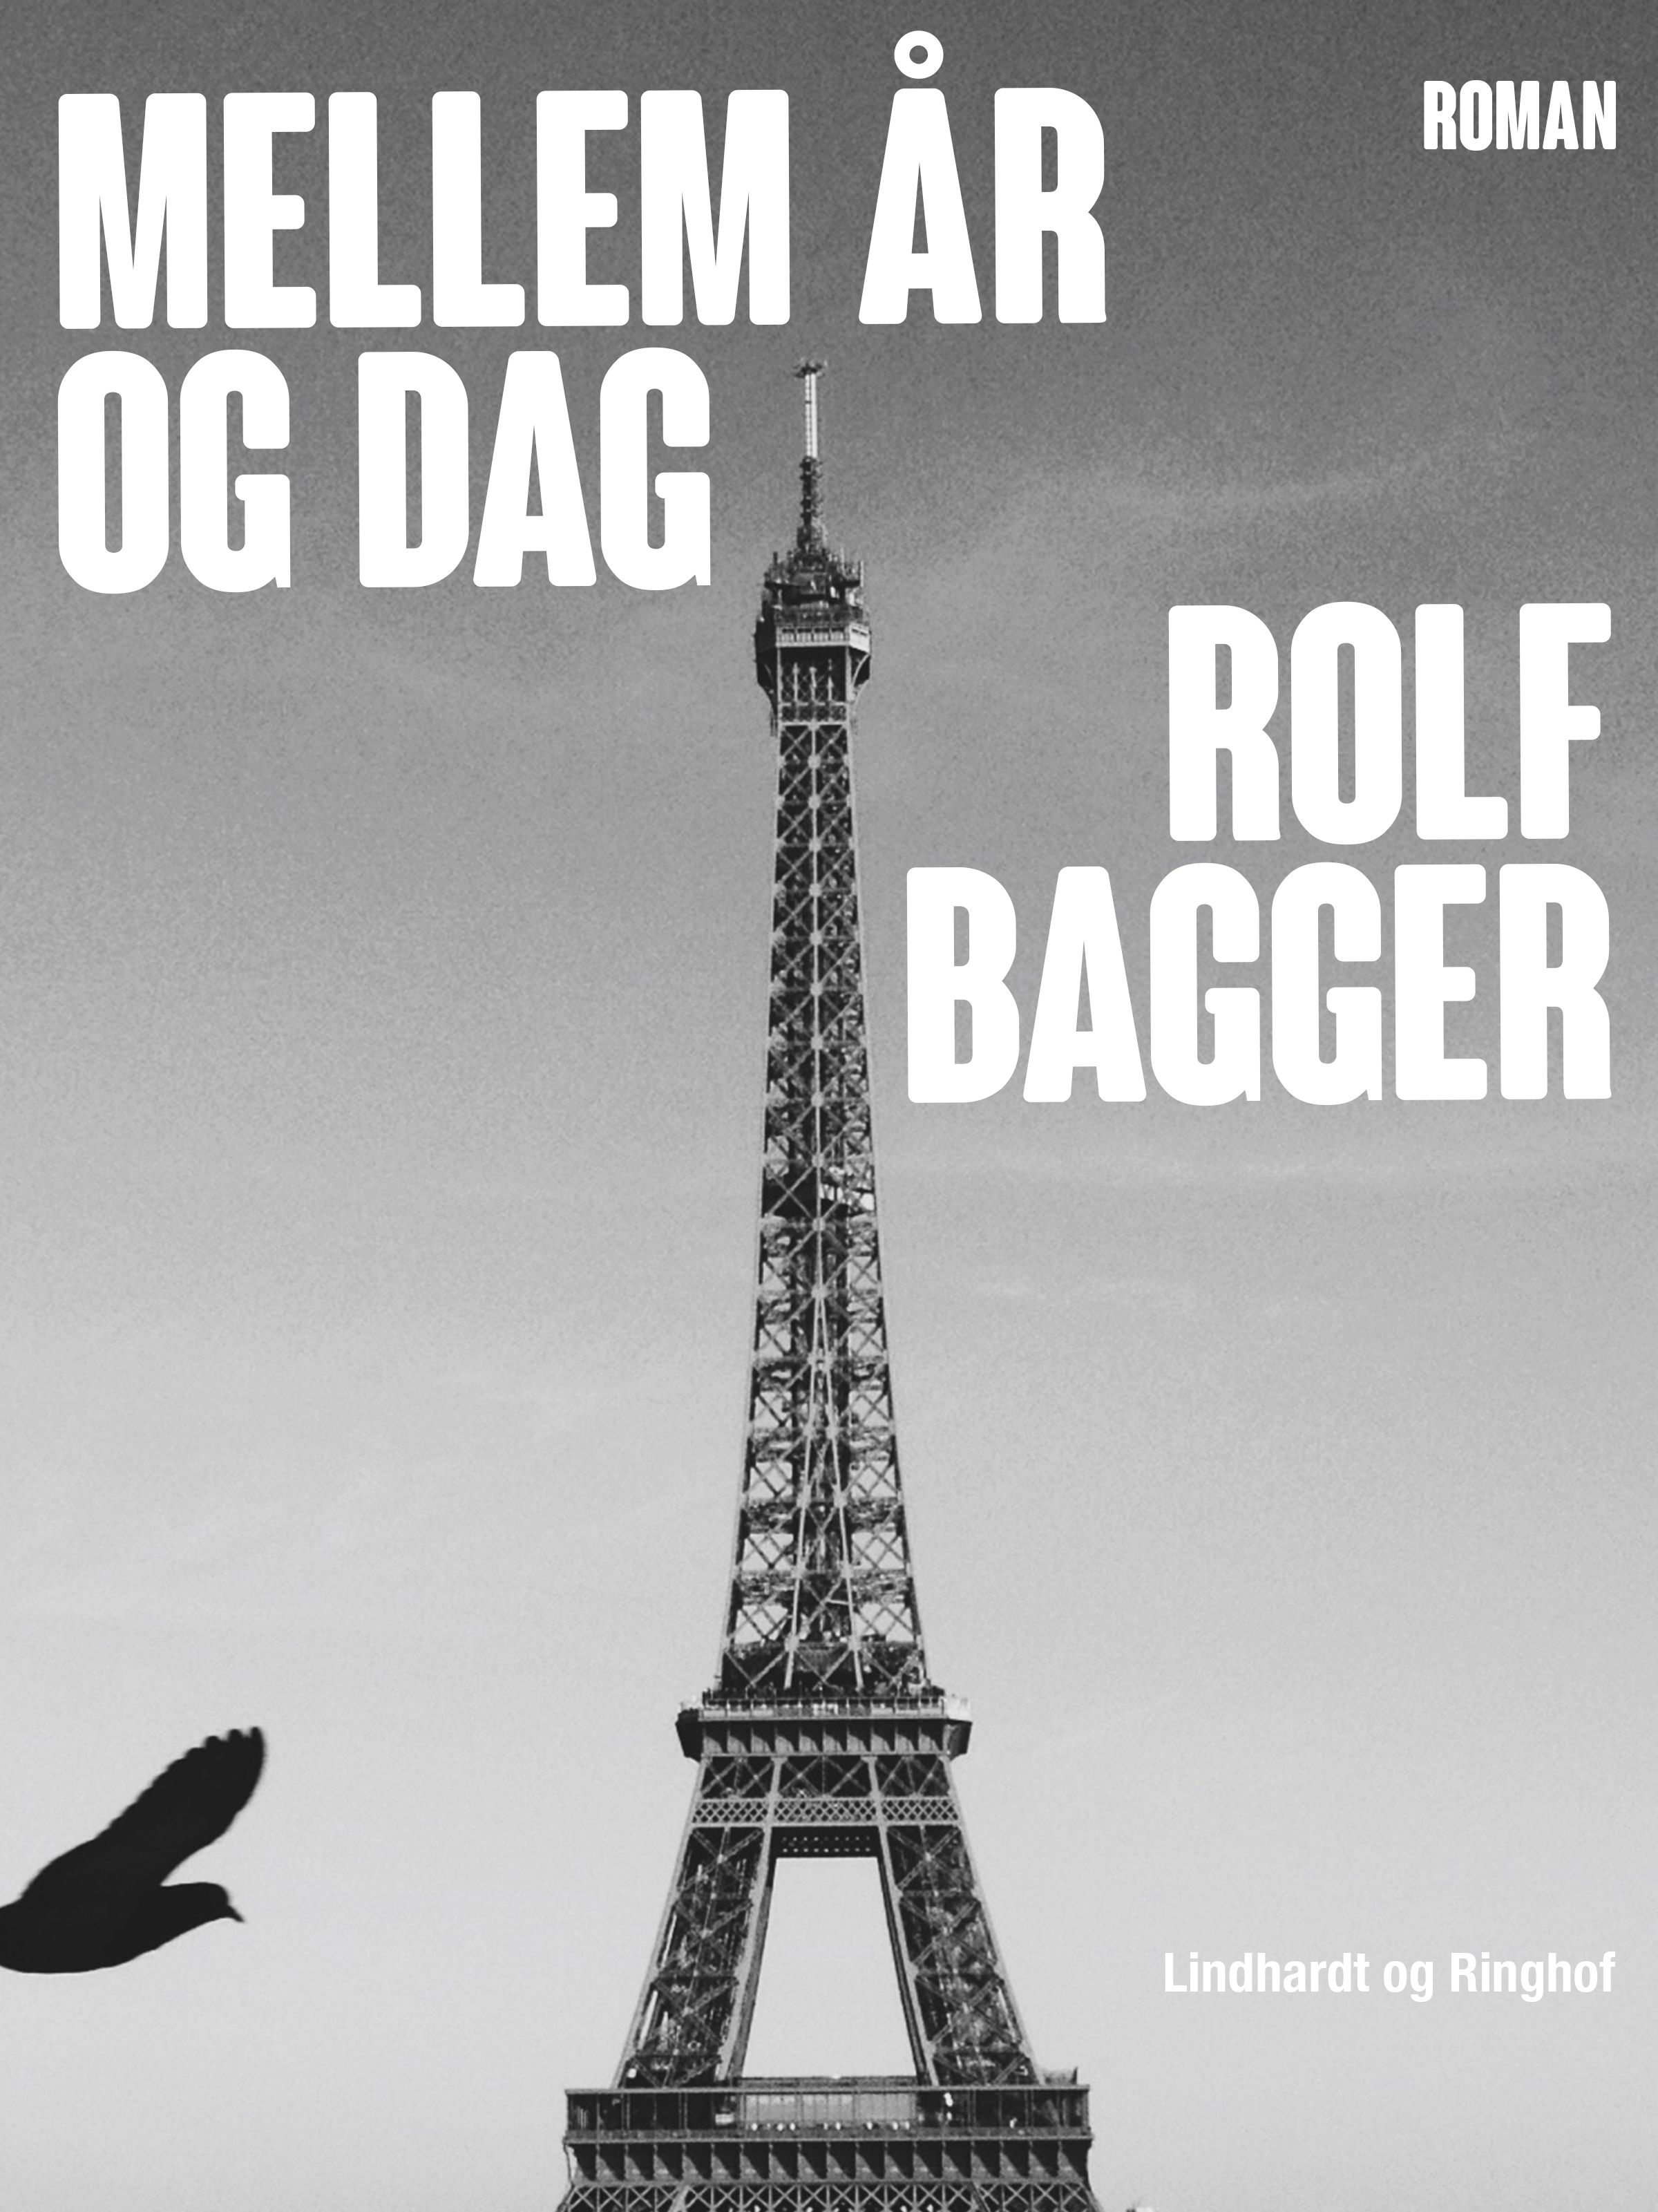 Mellem år og dag, ljudbok av Rolf Bagger